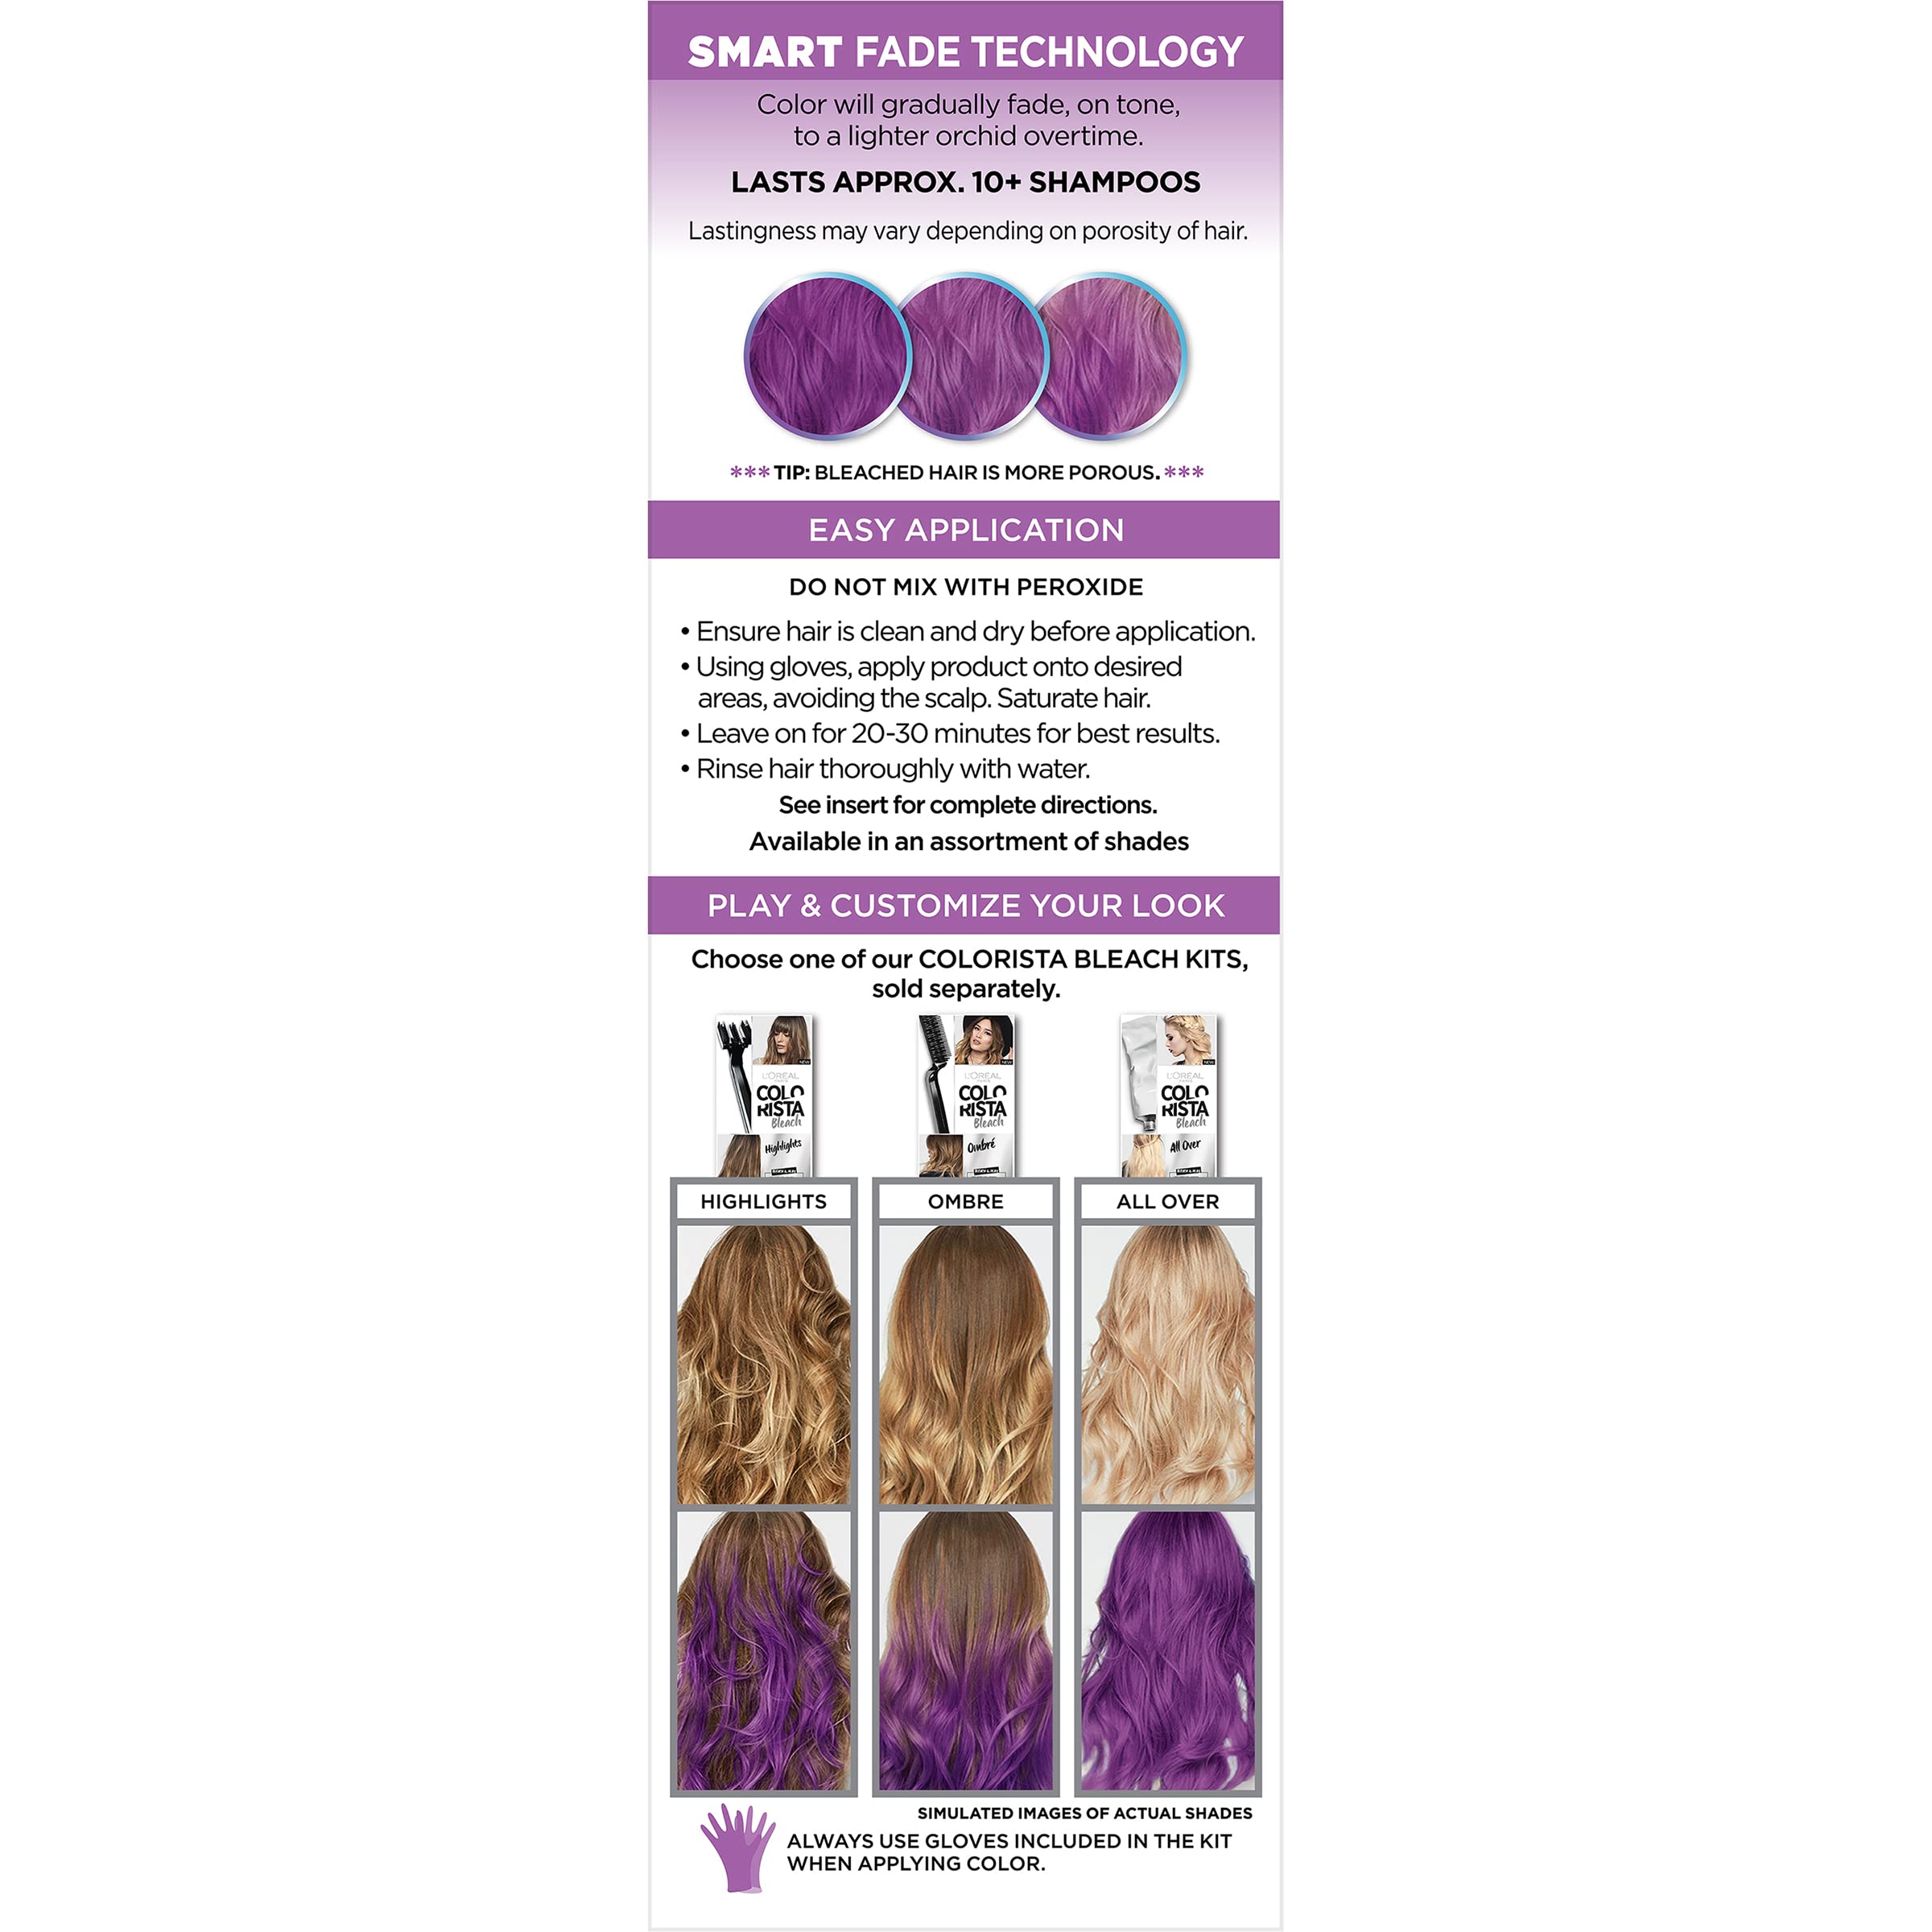 L’Oréal Paris Colorista Metallic Semi Permanent Hair Color Kit for Light Blonde or Bleached Hair, Metallic Orchid Purple